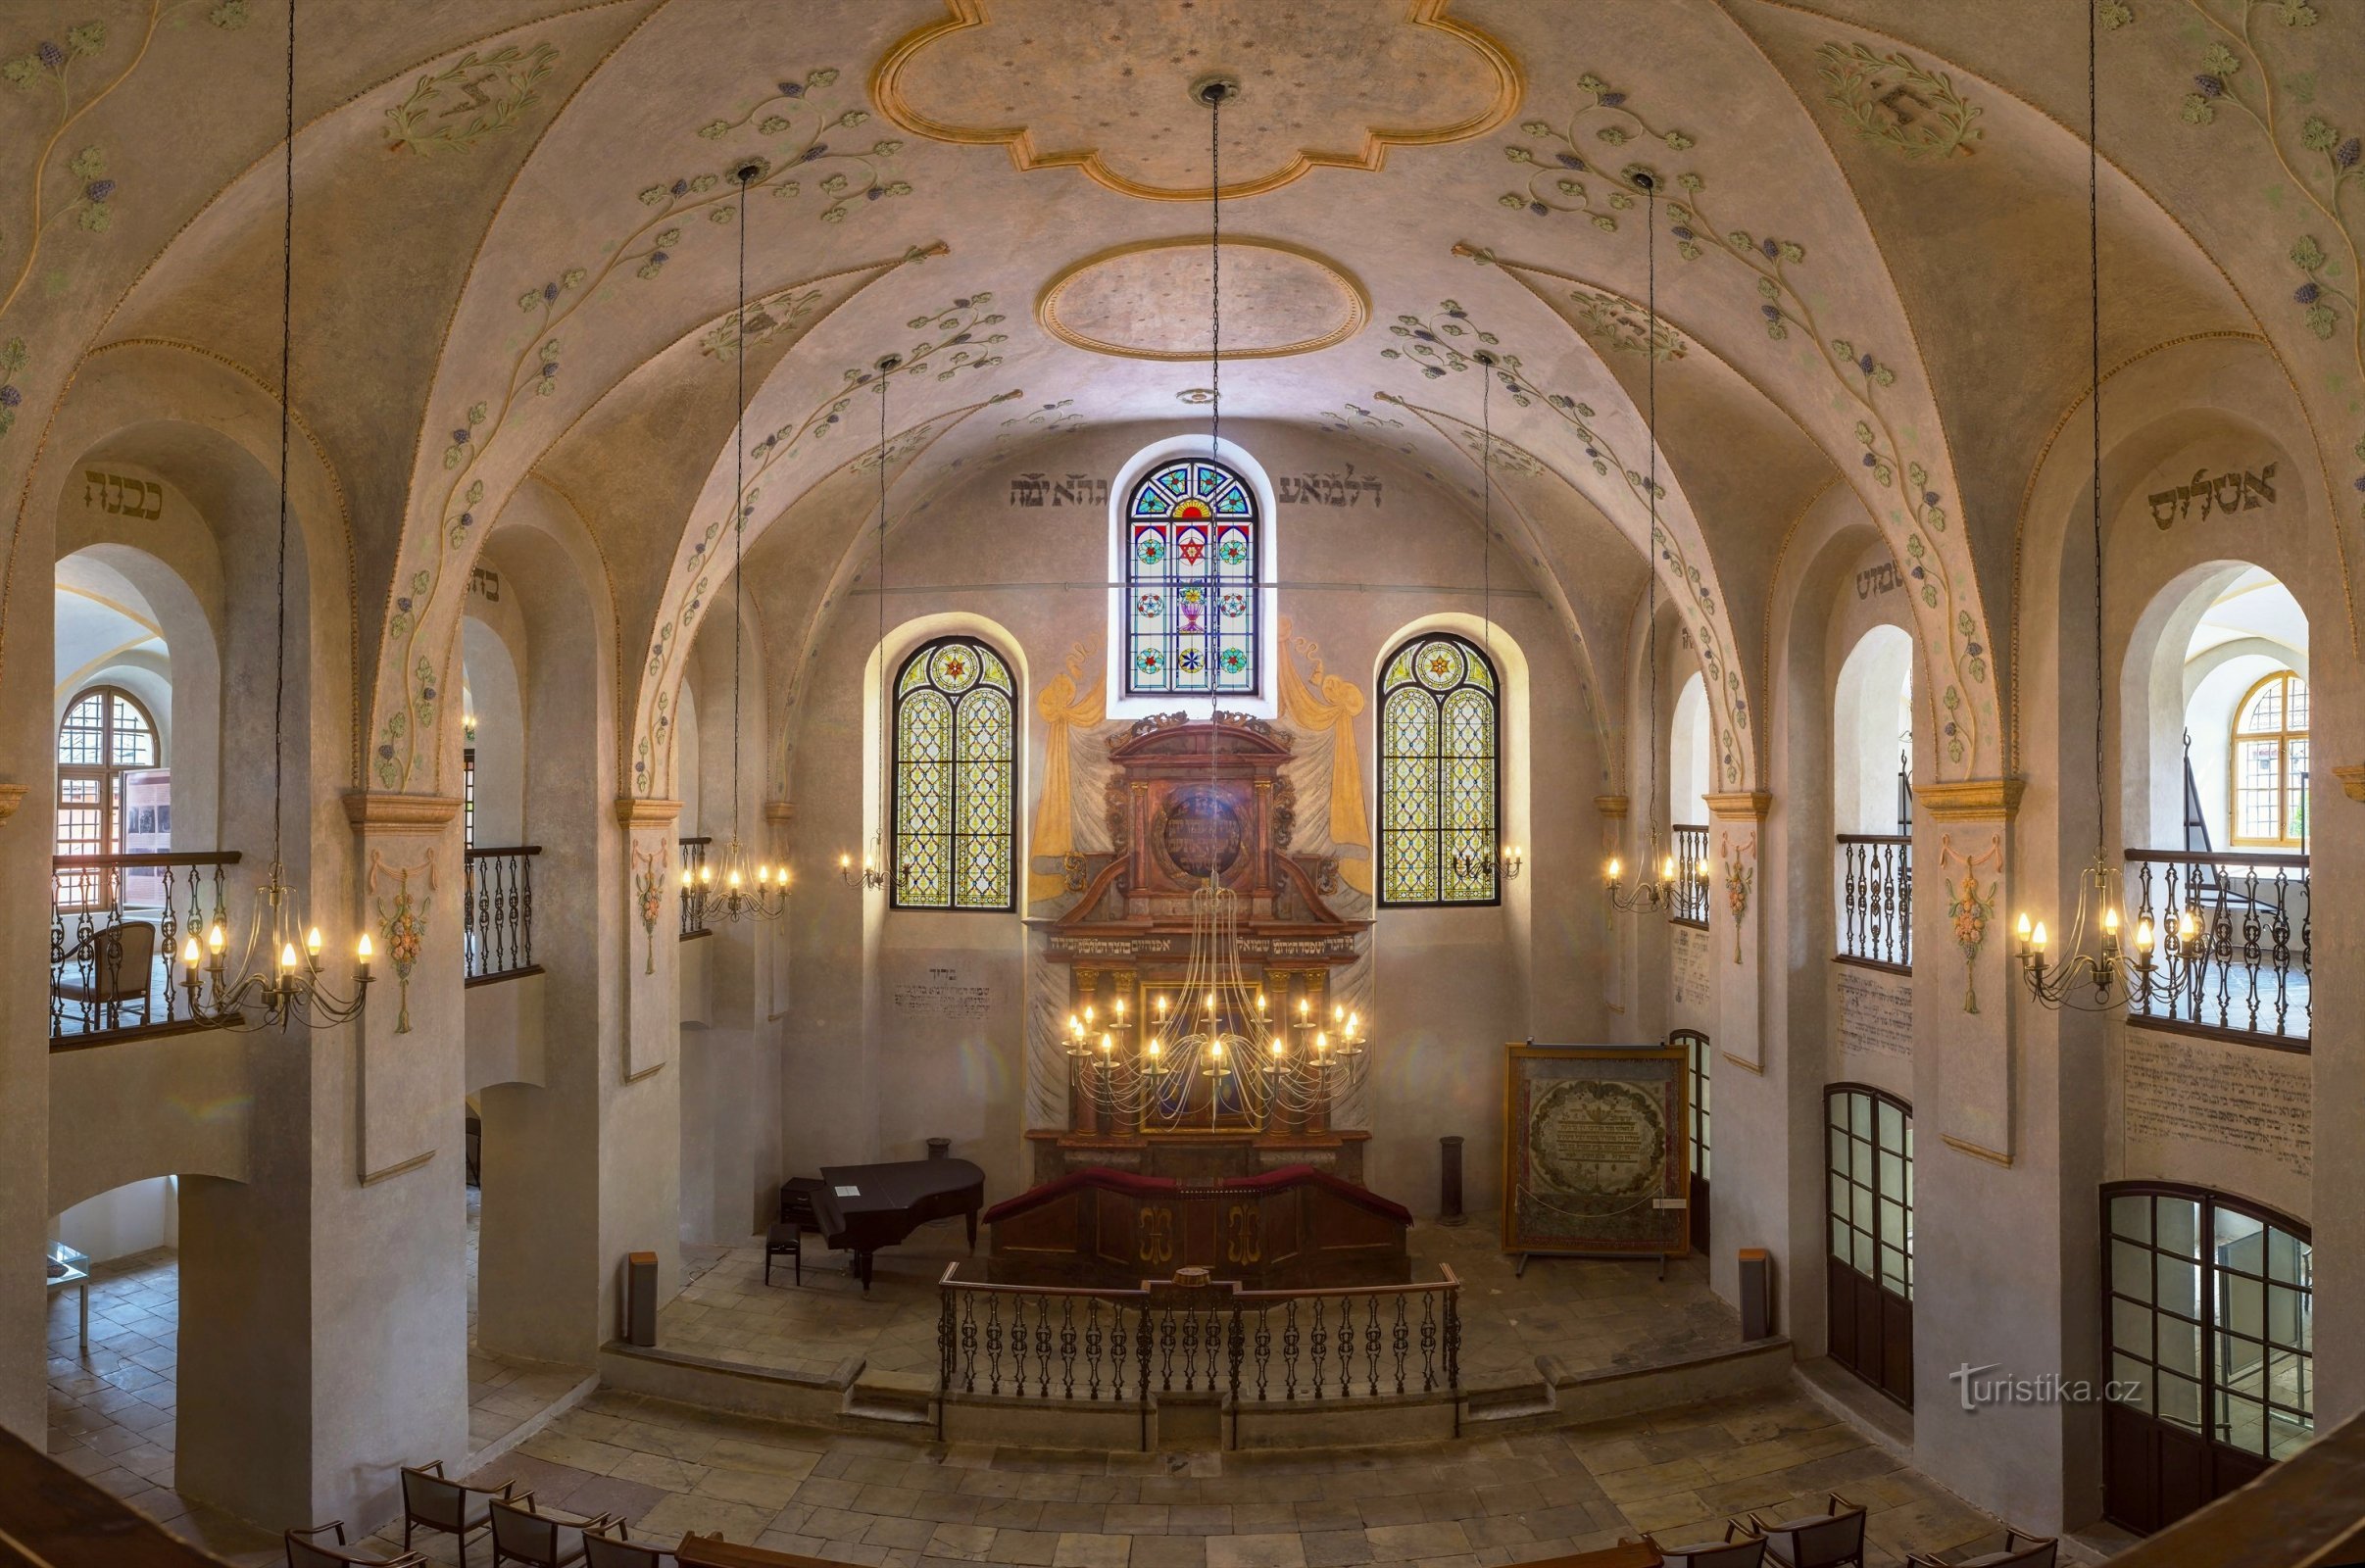 La synagogue de Cologne est en fête cette année